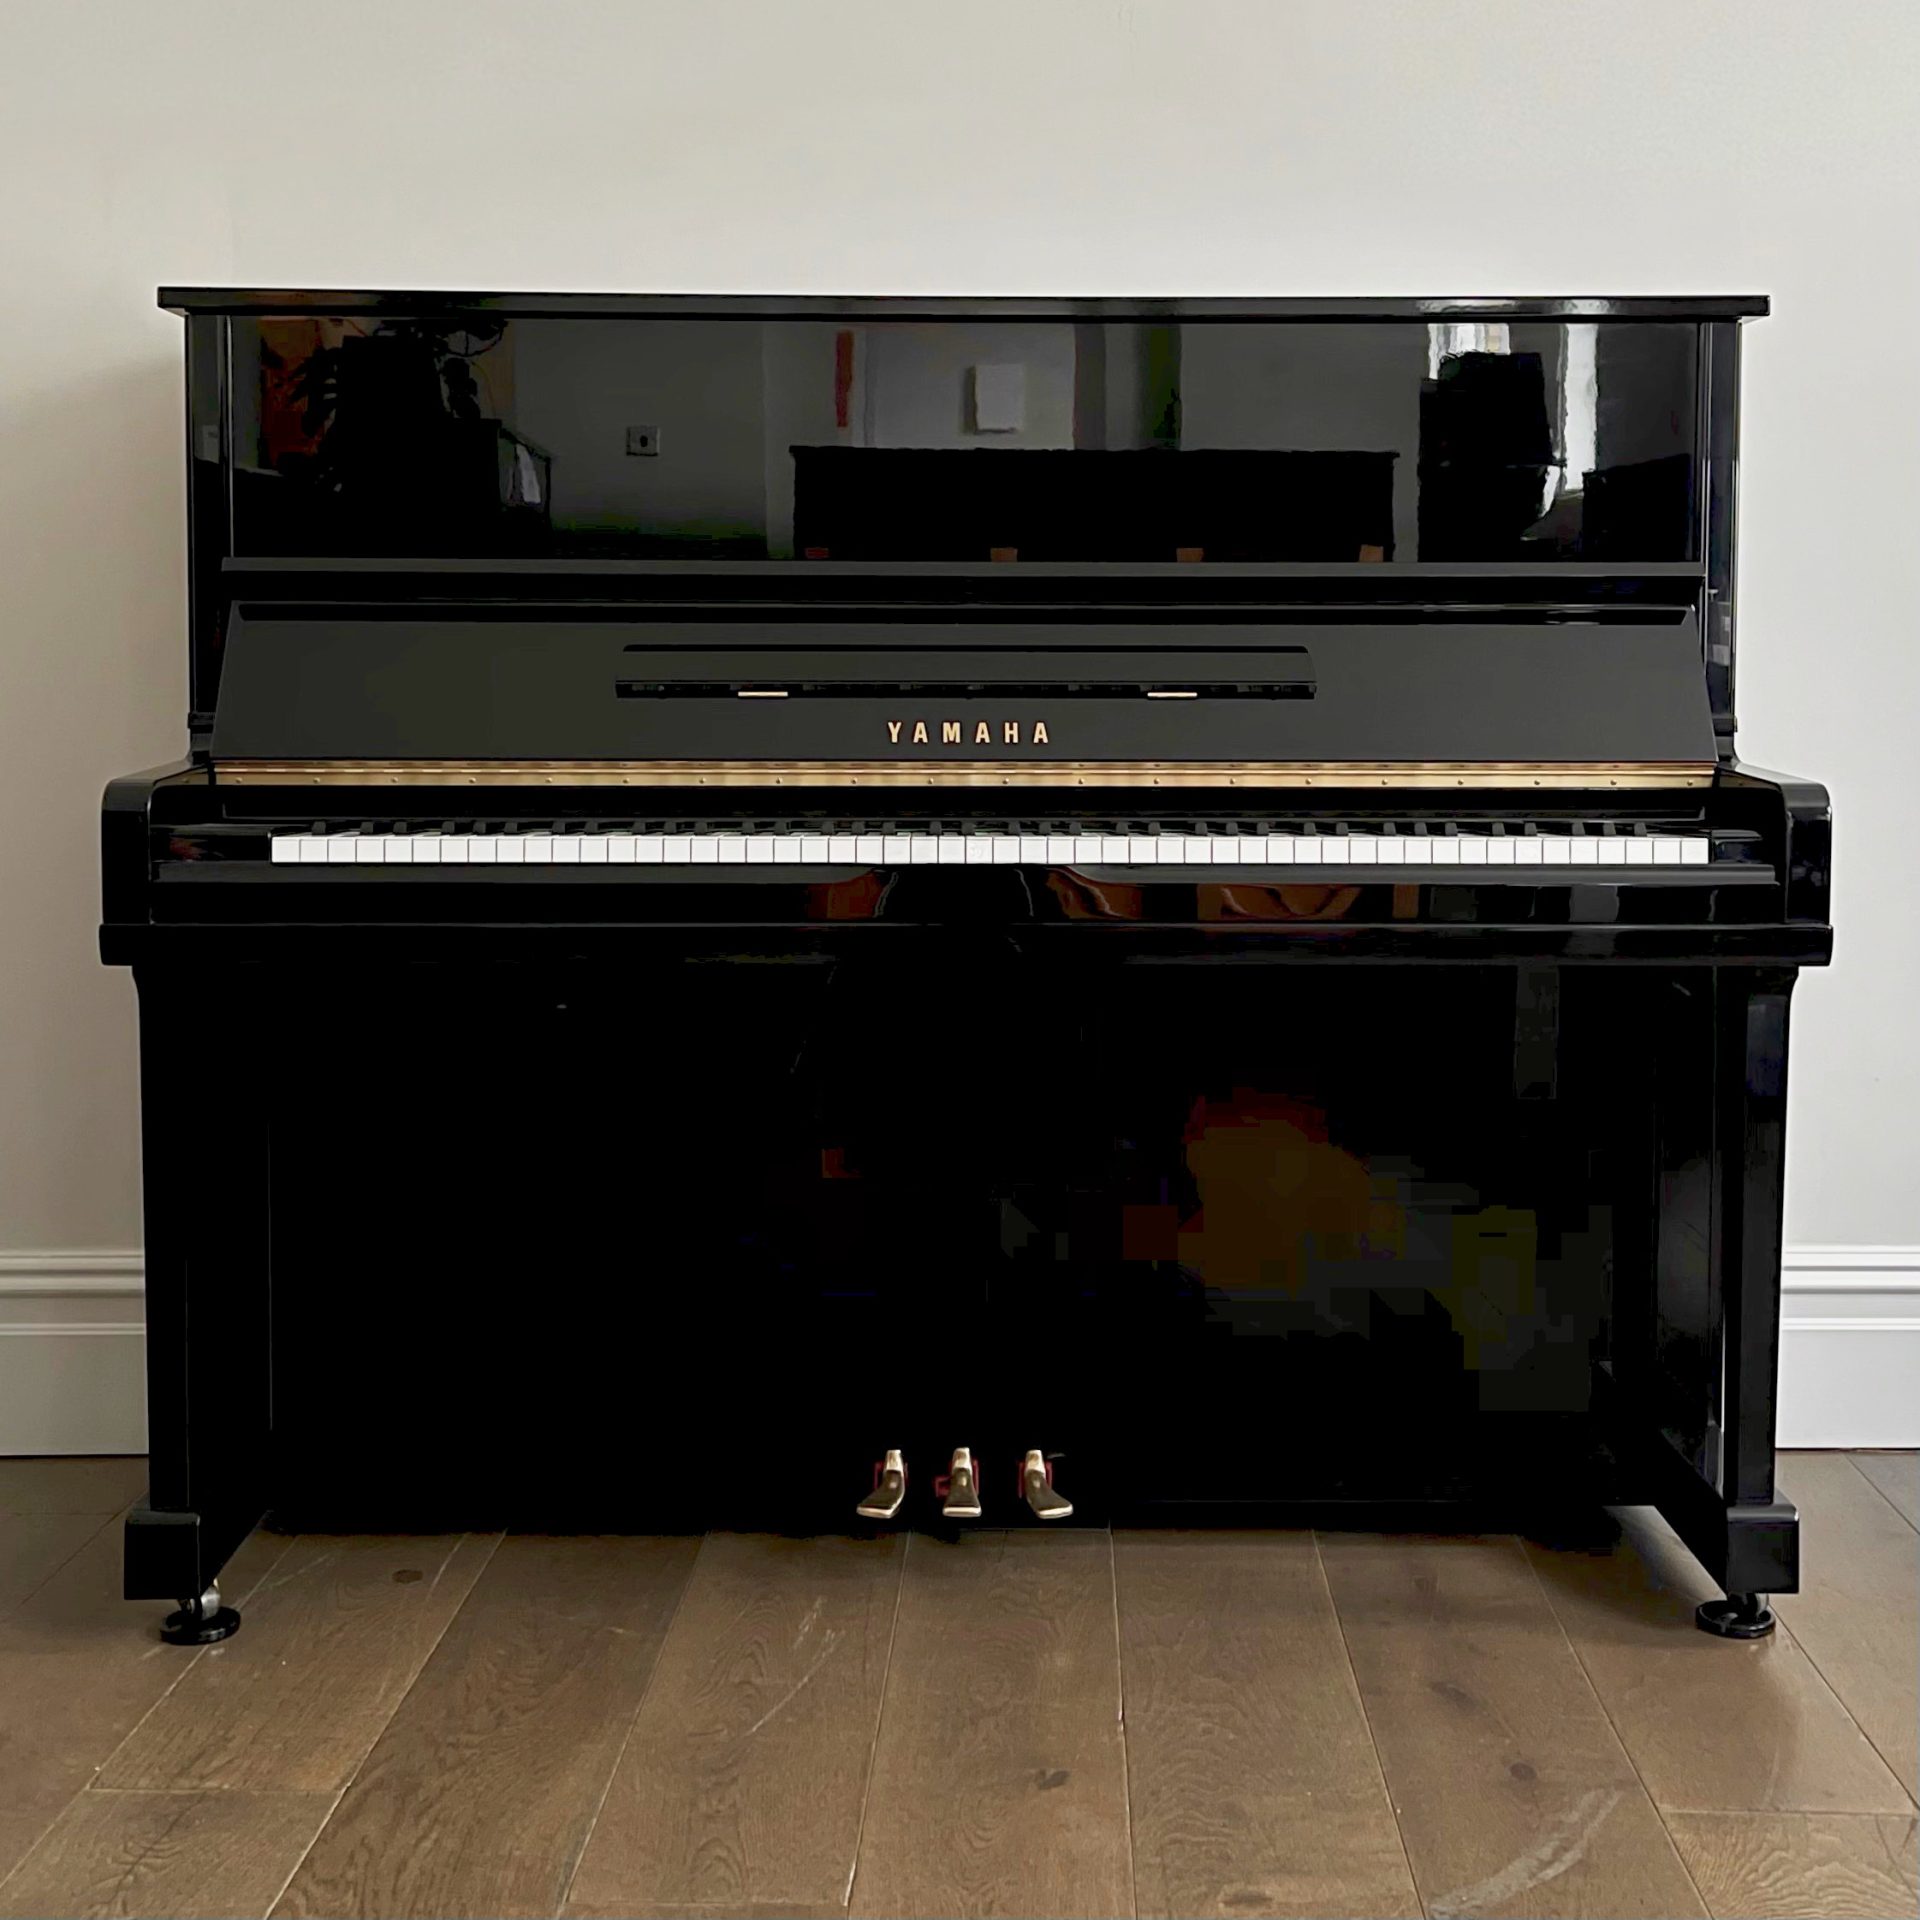 A Yamaha U1 Upright Piano